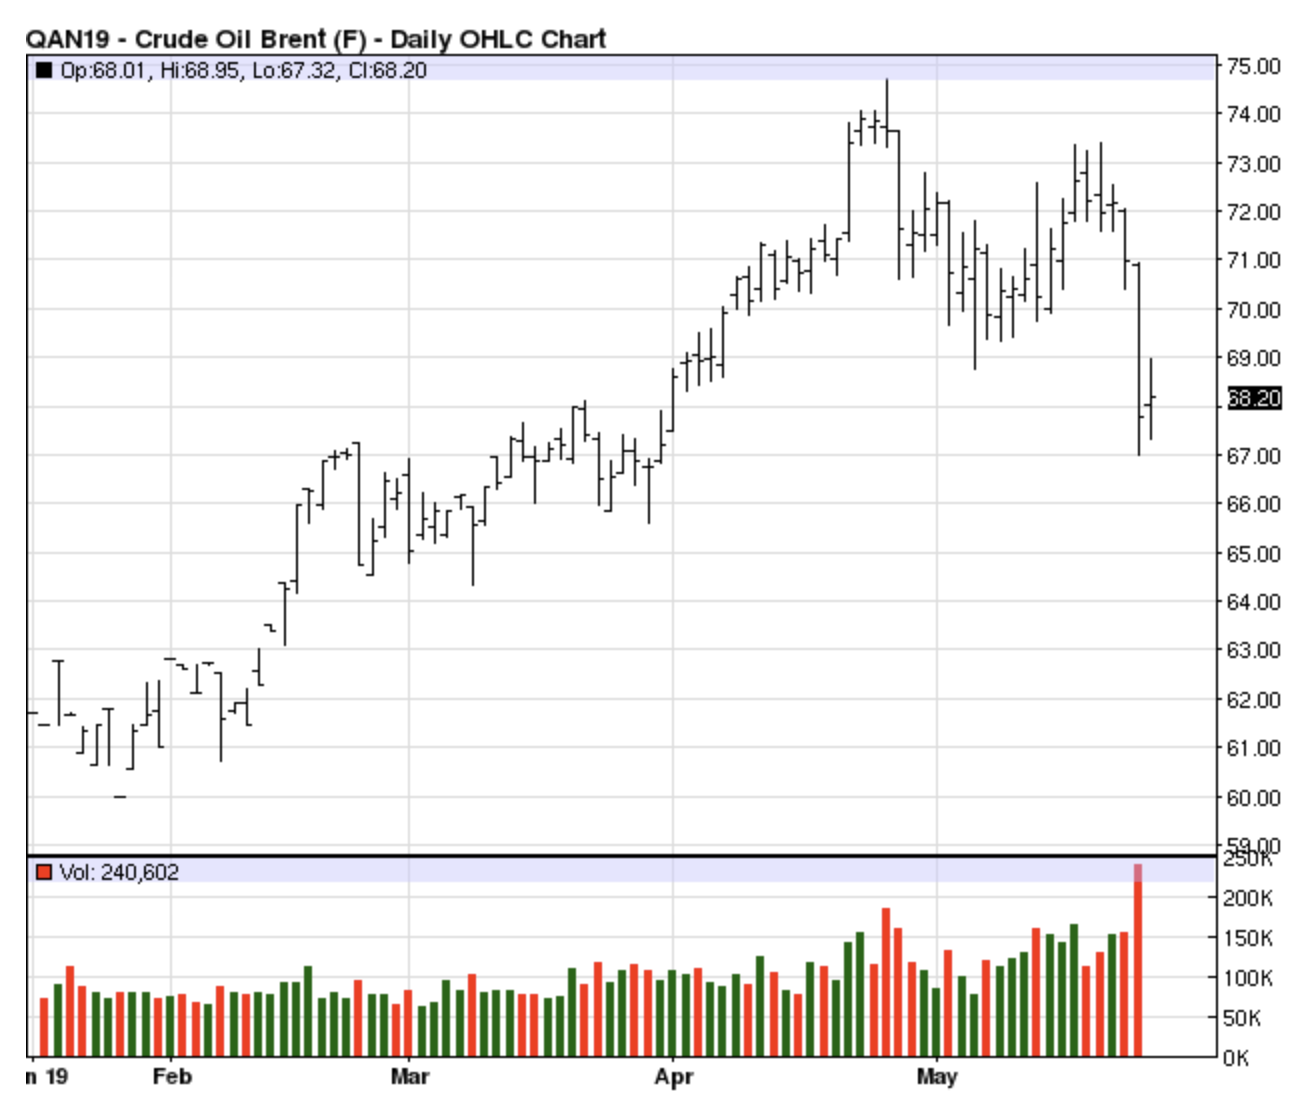 Crude Oil Stockpiles Chart